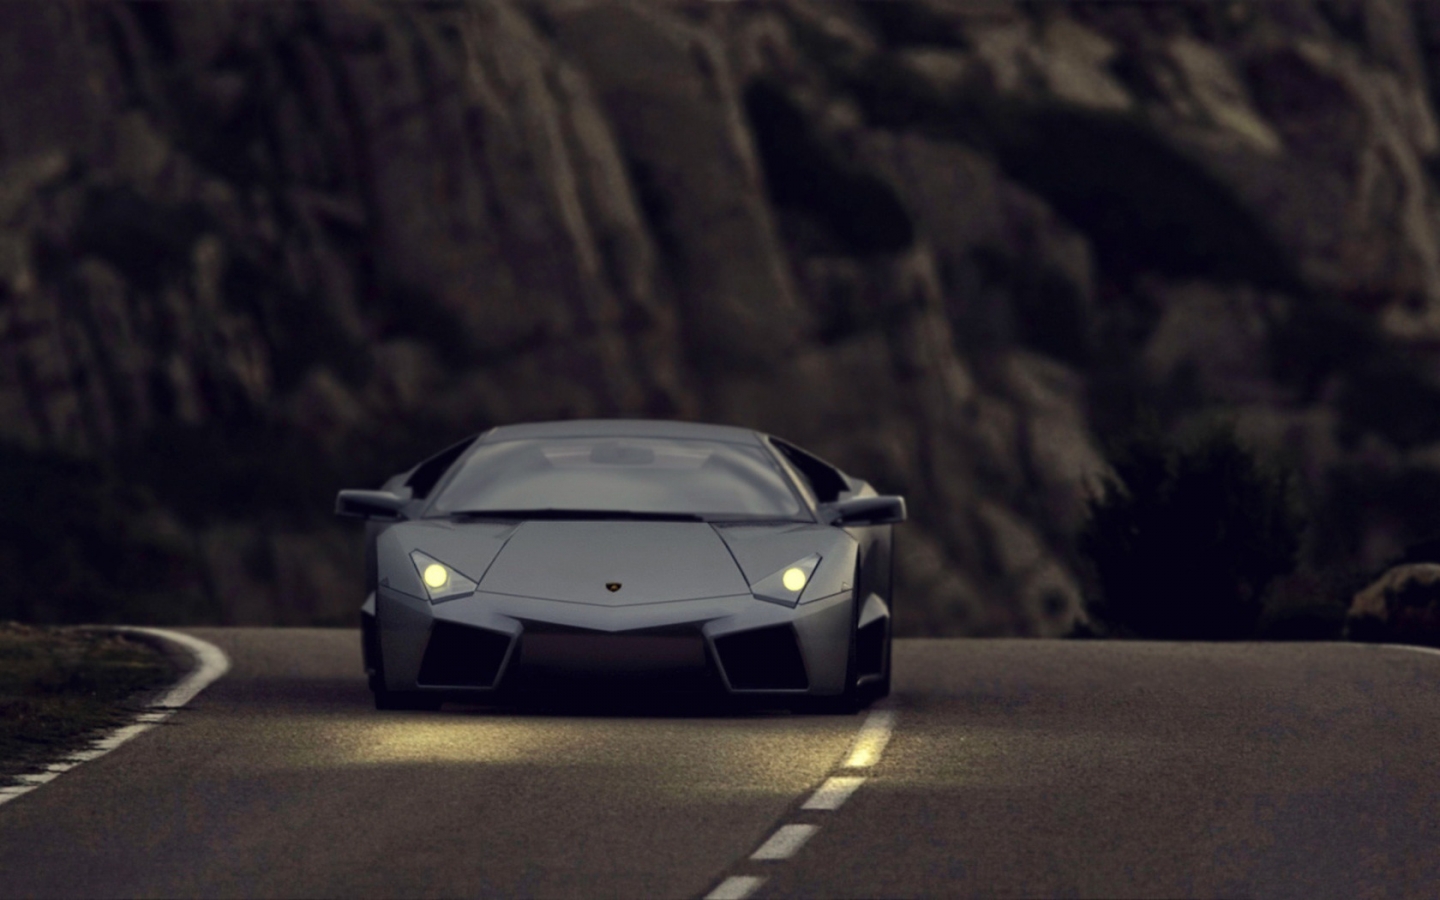 Lamborghini Reventon Black Matte for 1440 x 900 widescreen resolution